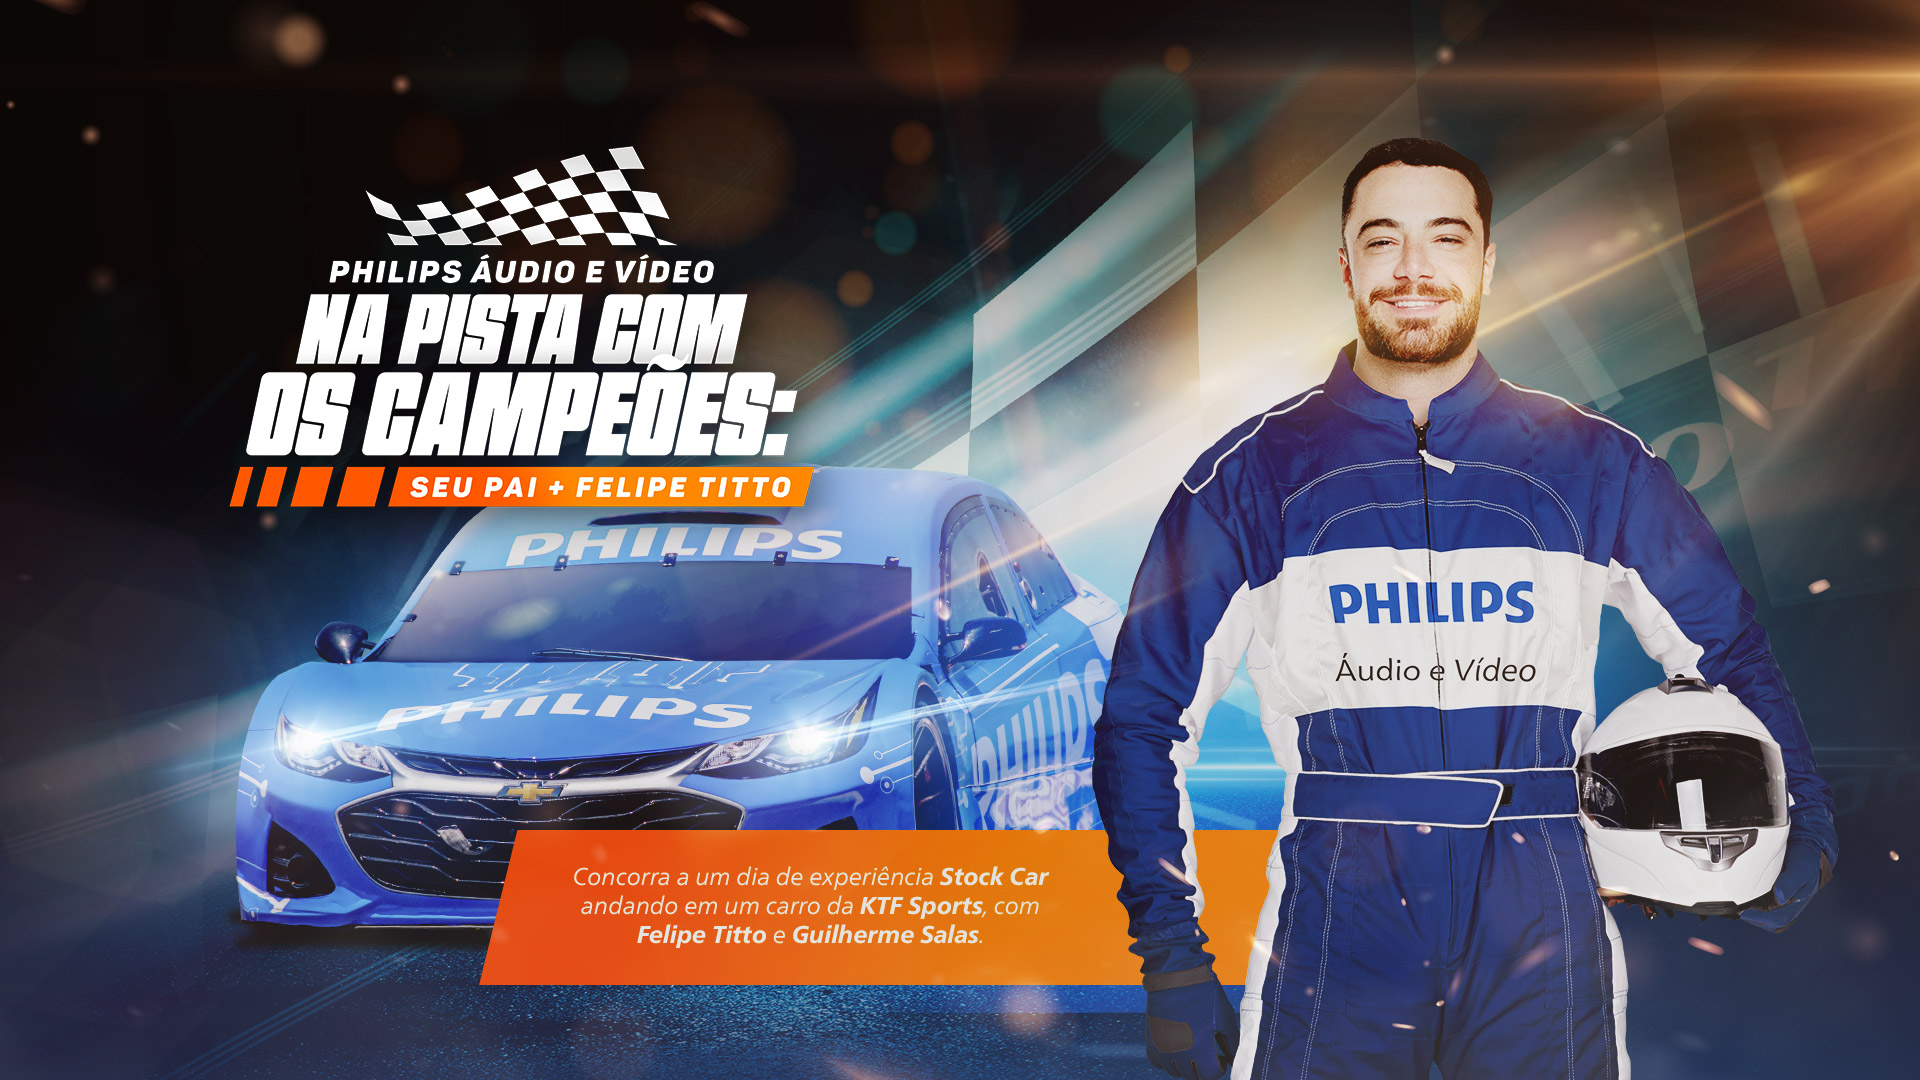 Banner campanha: Philips Áudio e Vídeo na pista com os campeões: seu pai + Felipe Titto